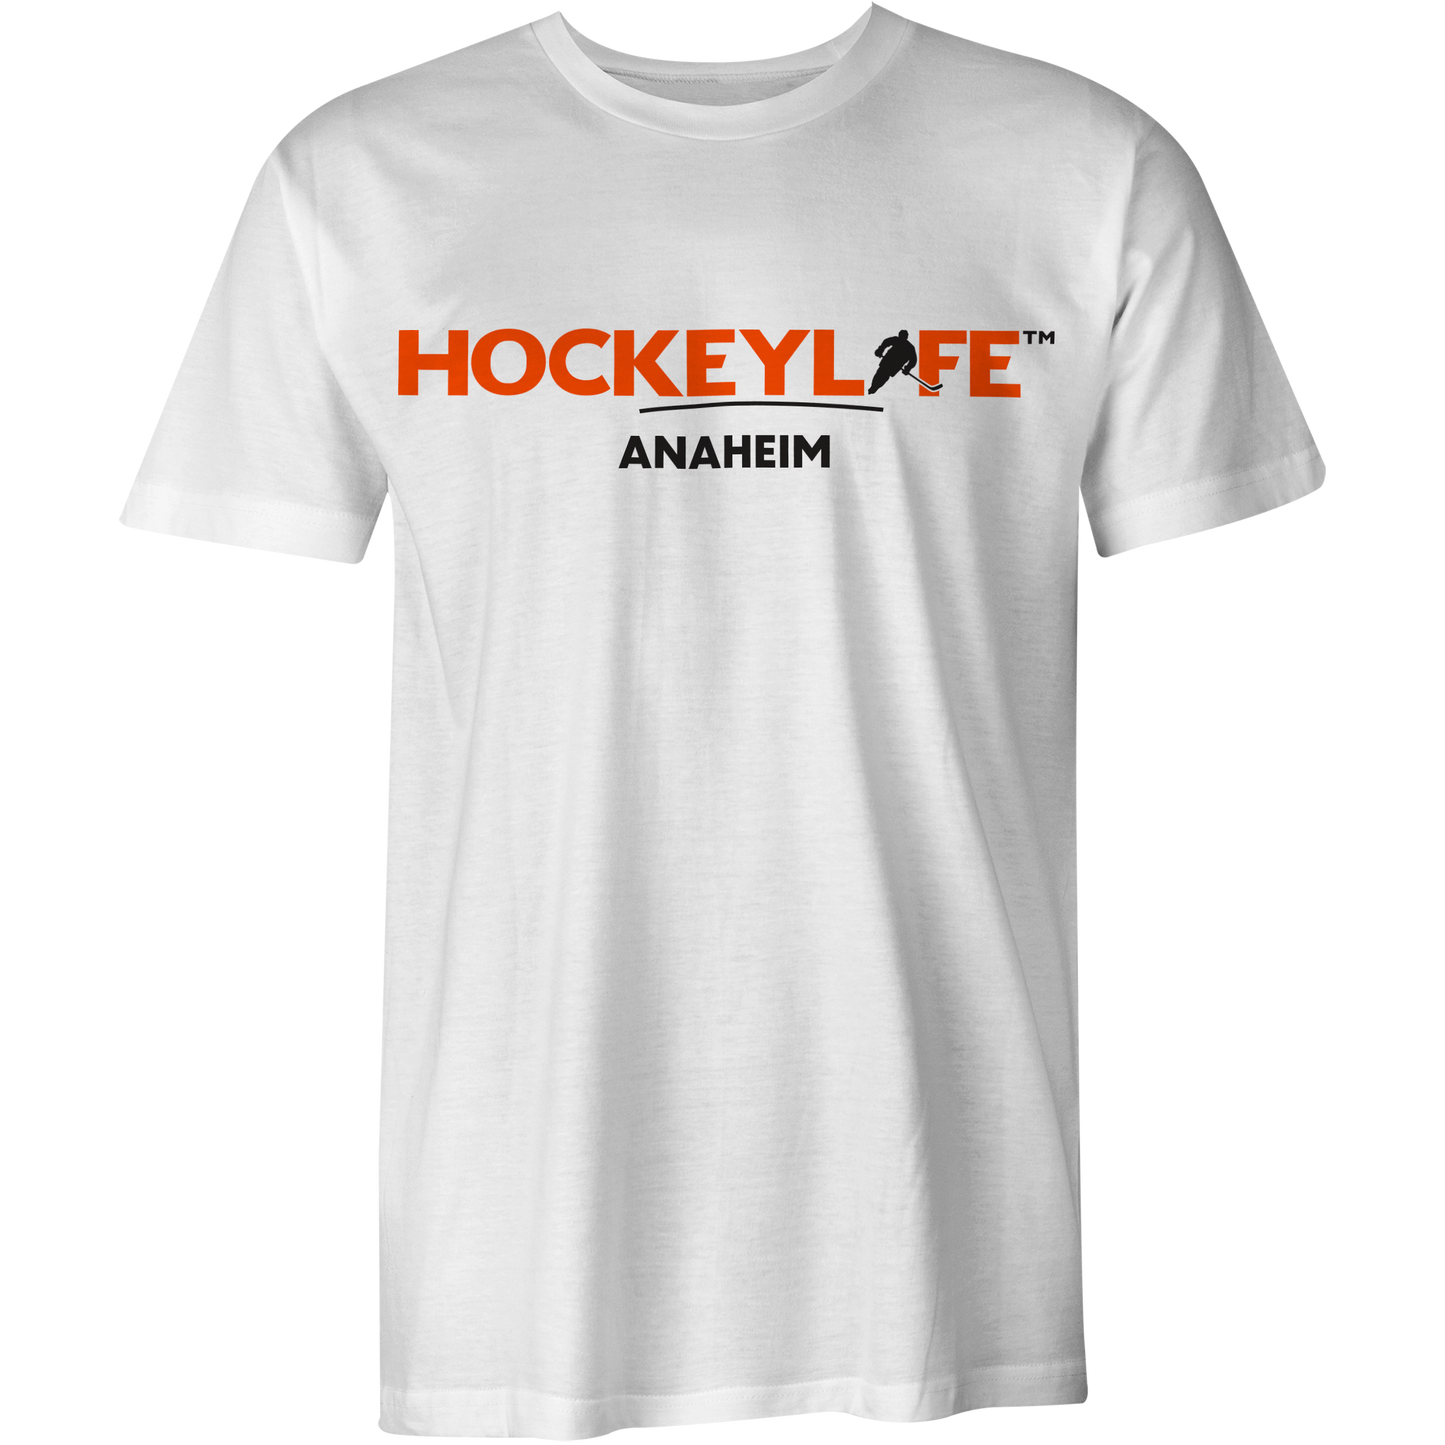 HockeyLife Anaheim Tee Shirt